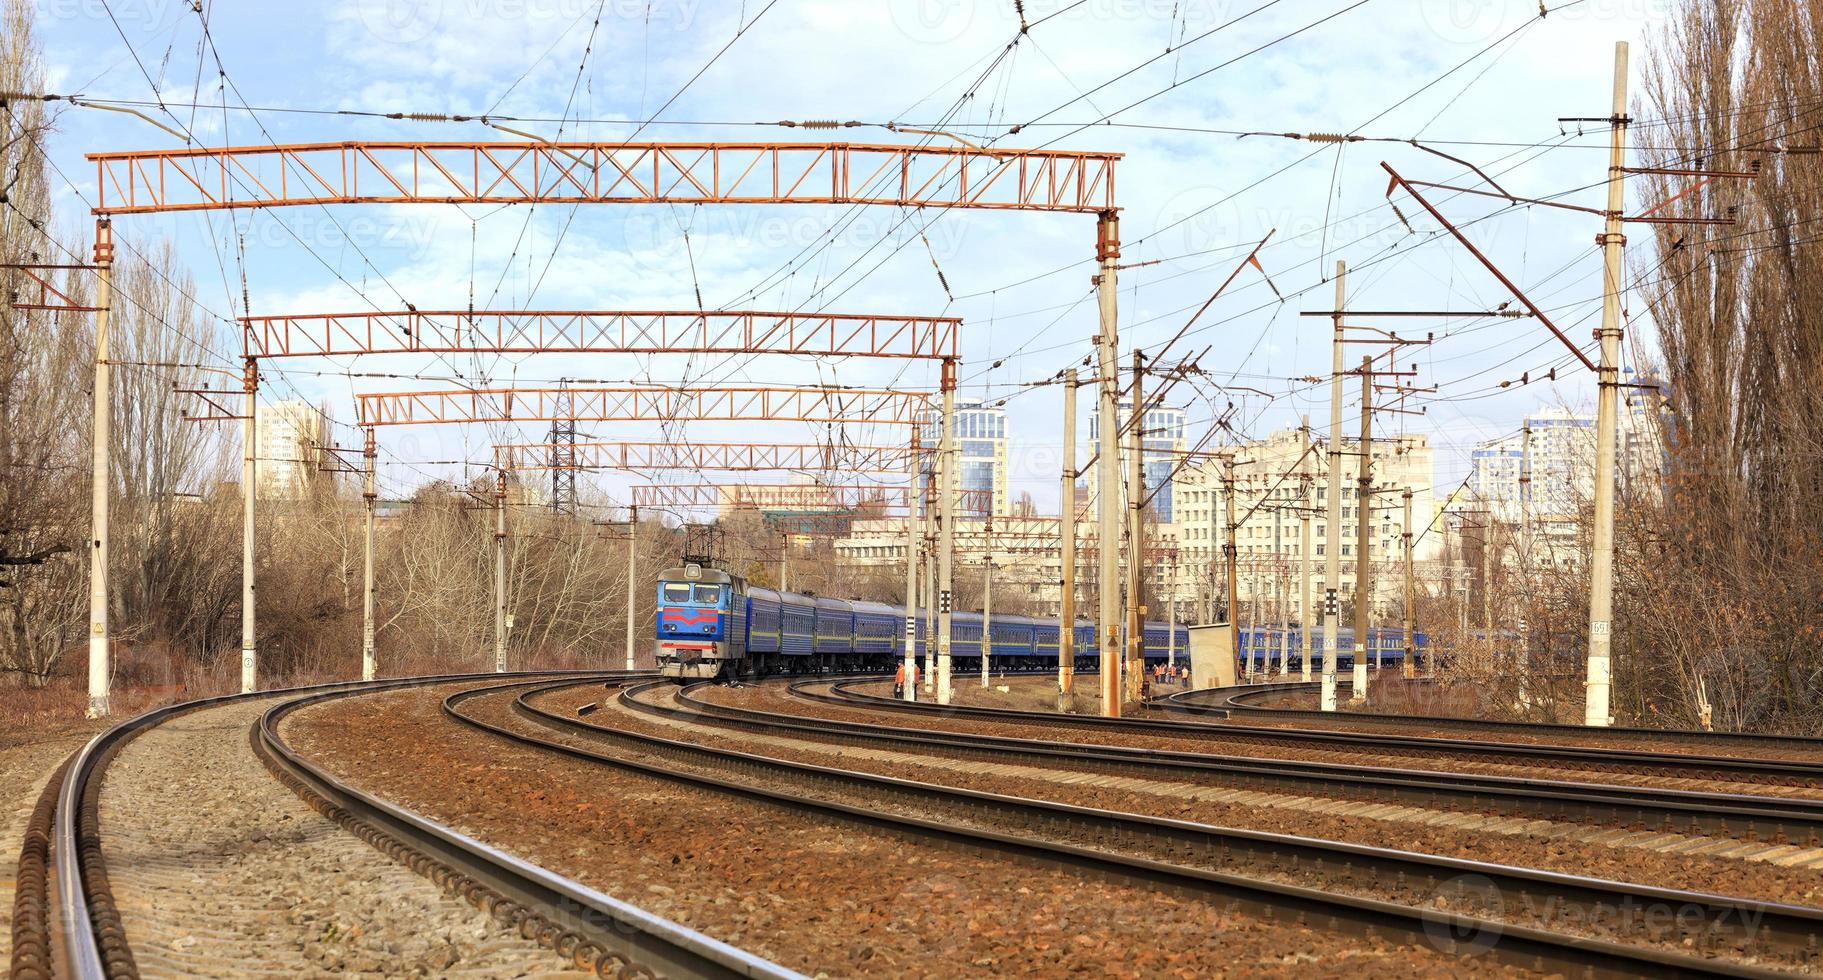 Personenzugwagen der Bahn fahren auf den Bahngleisen im Hintergrund des Stadtbildes foto